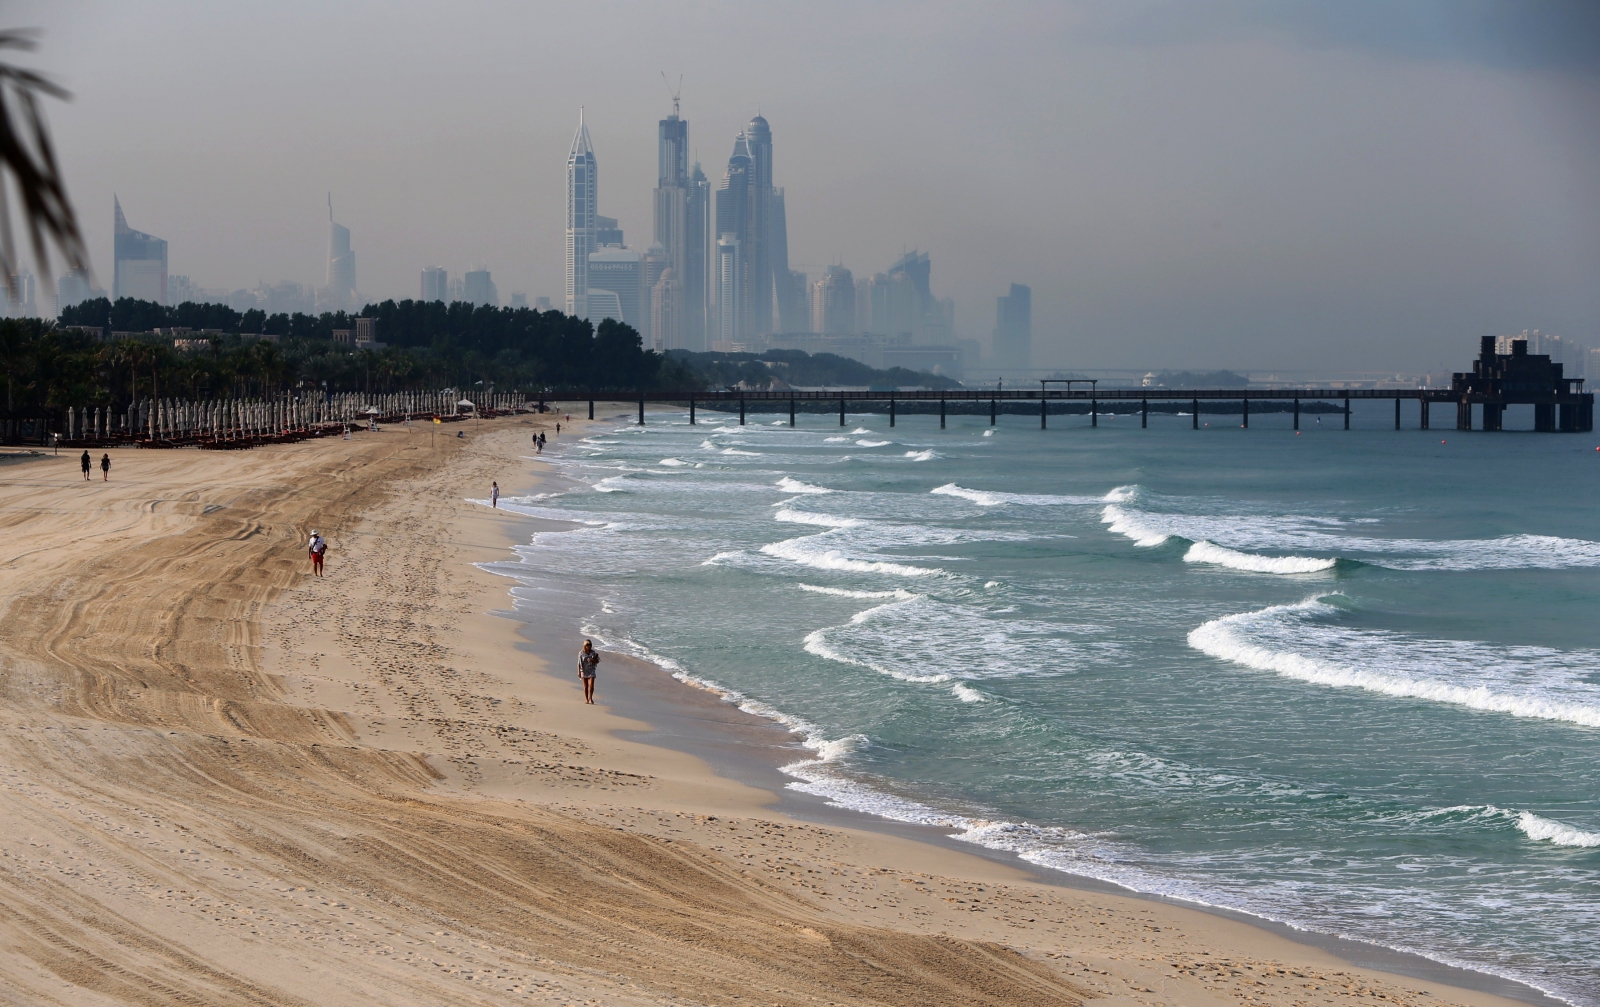 Шторм в эмиратах. Дубай фото пляжей. Арабские эмираты шторм. Дождь в арабских Эмиратах. Дубай пляжи фото туристов.